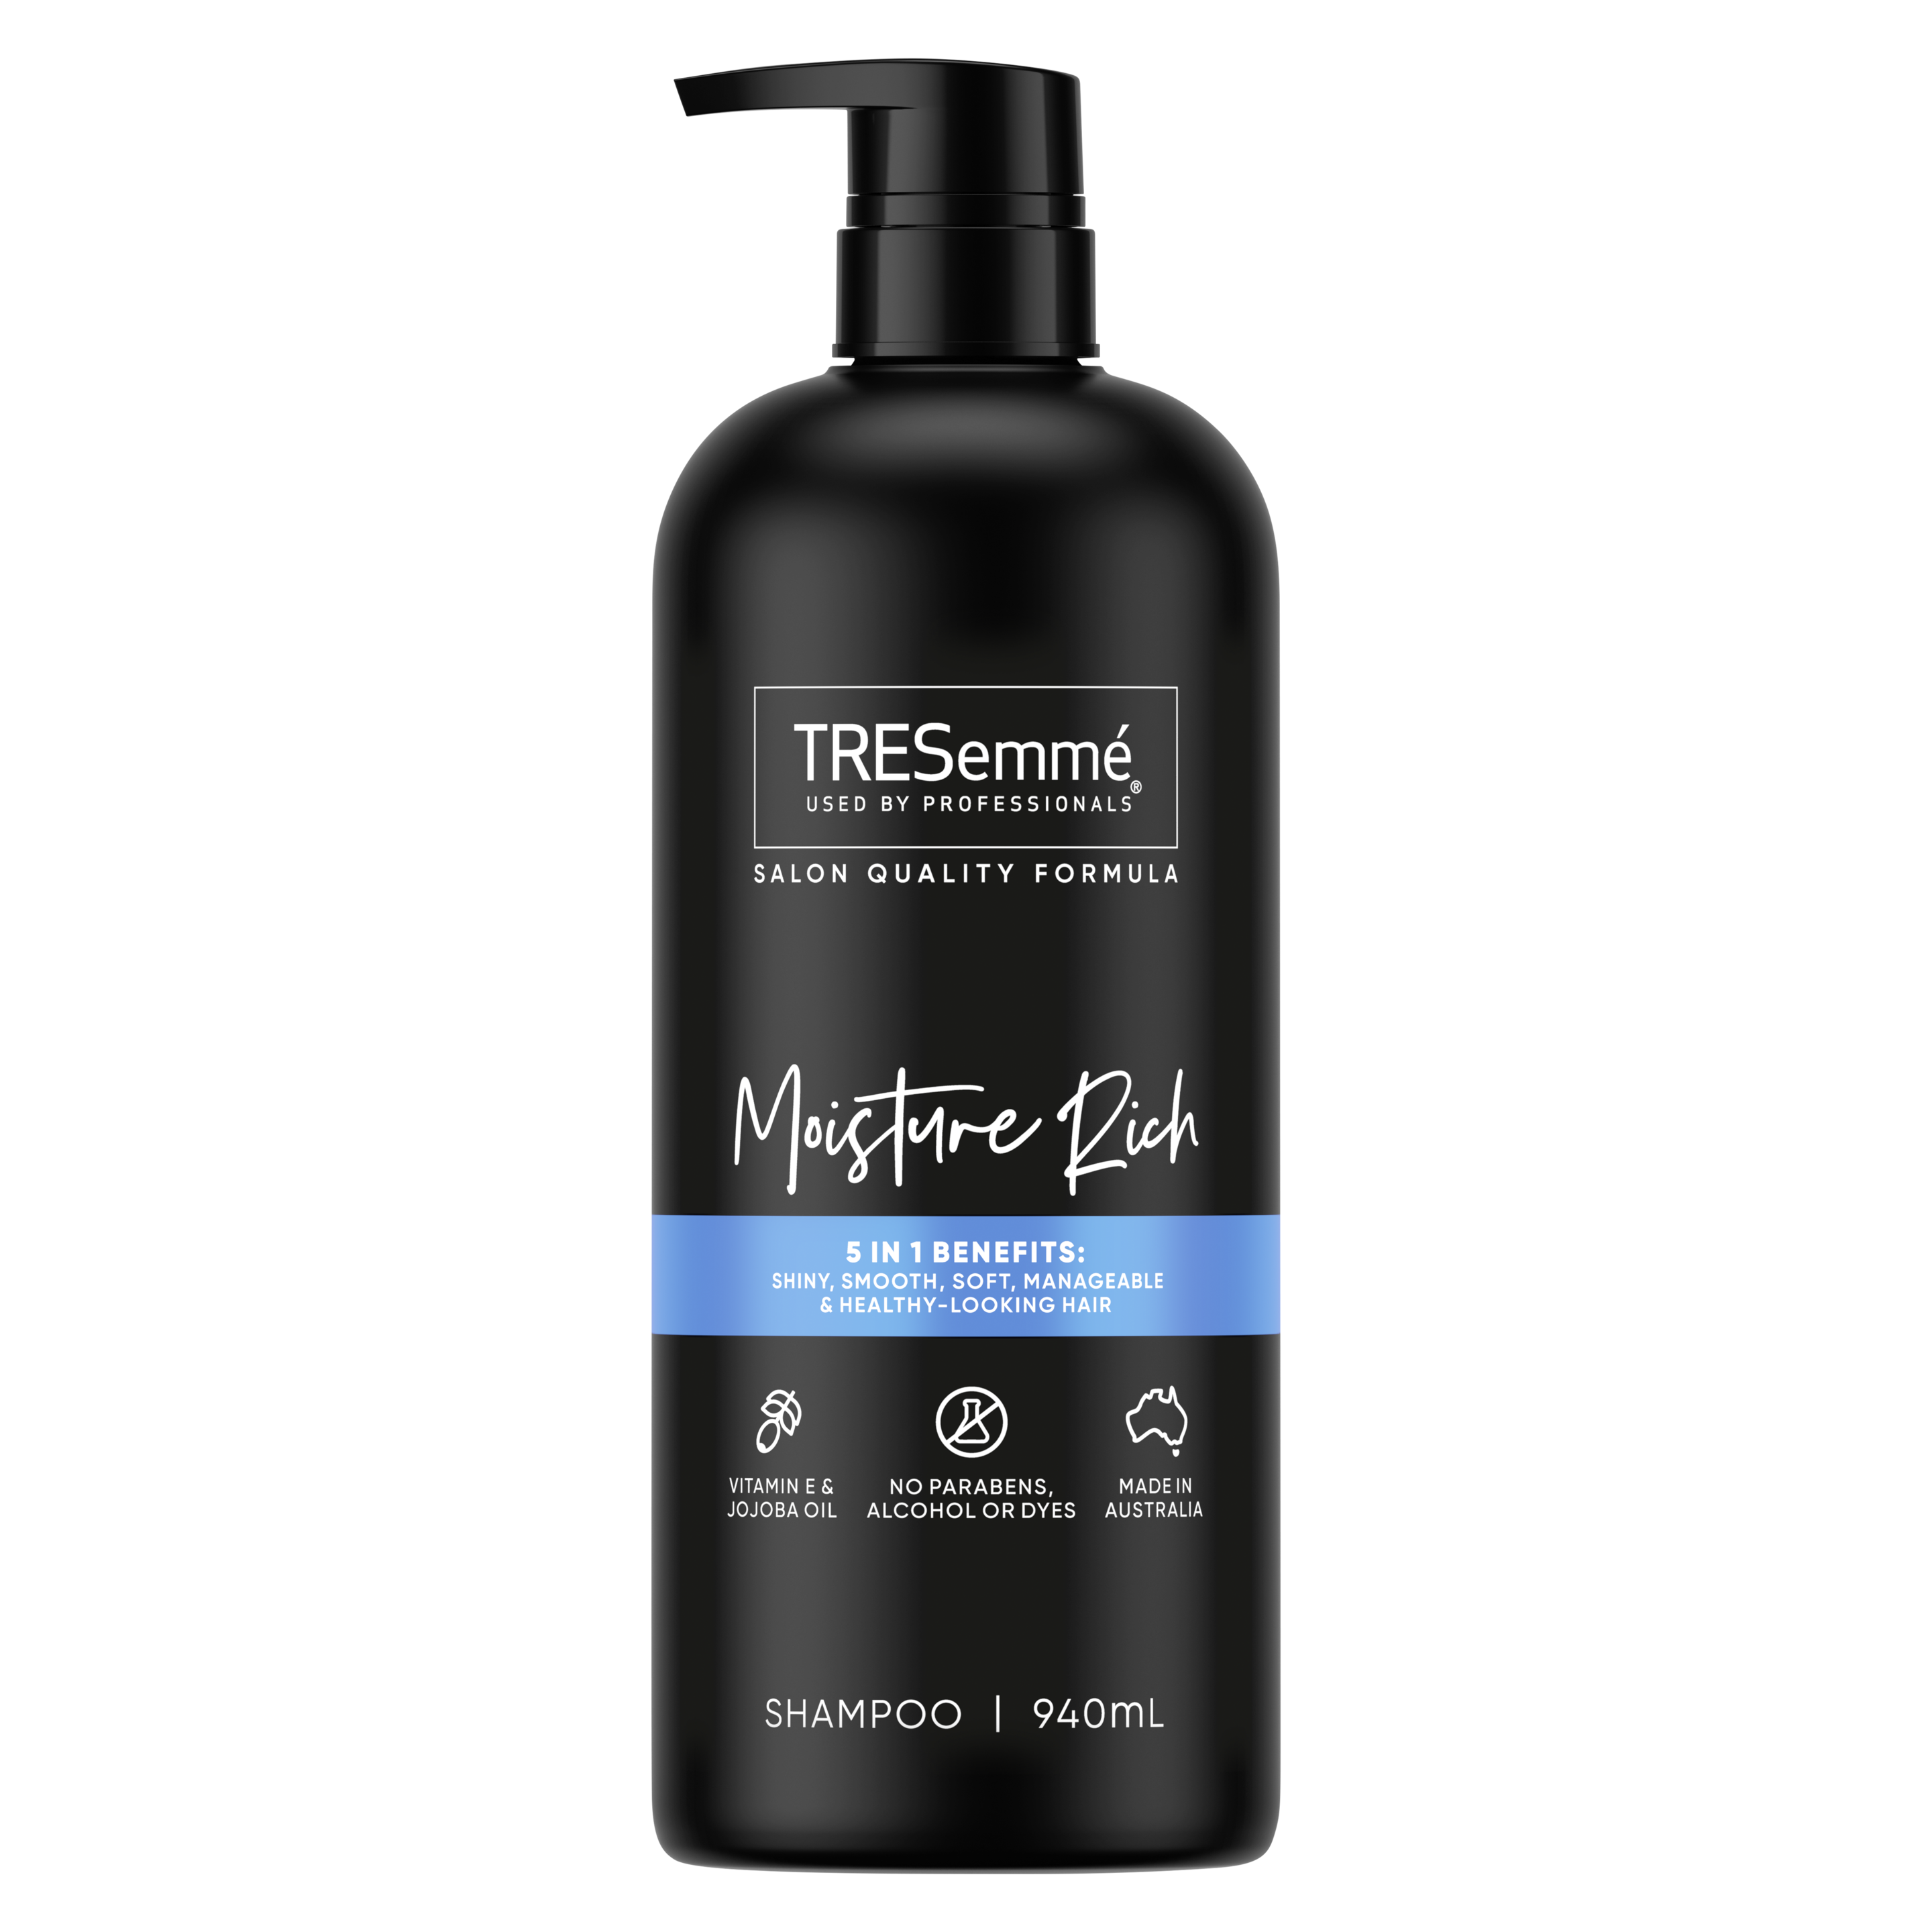 A 940ml bottle of TRESemmé Moisture Rich Shampoo